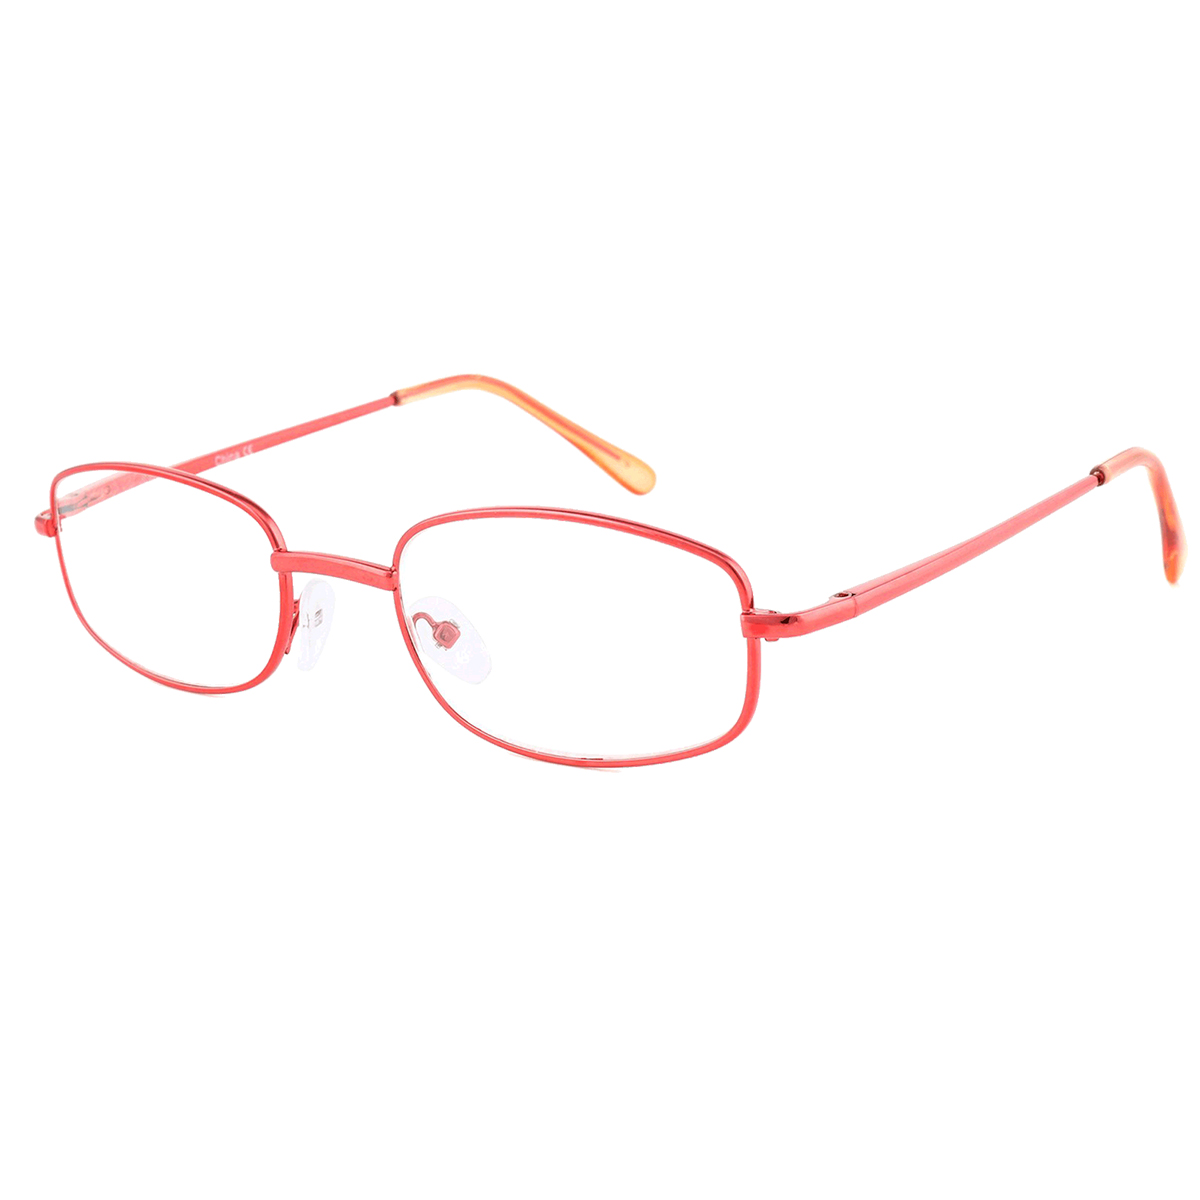 Callpidae - Oval Red Reading Glasses for Men & Women